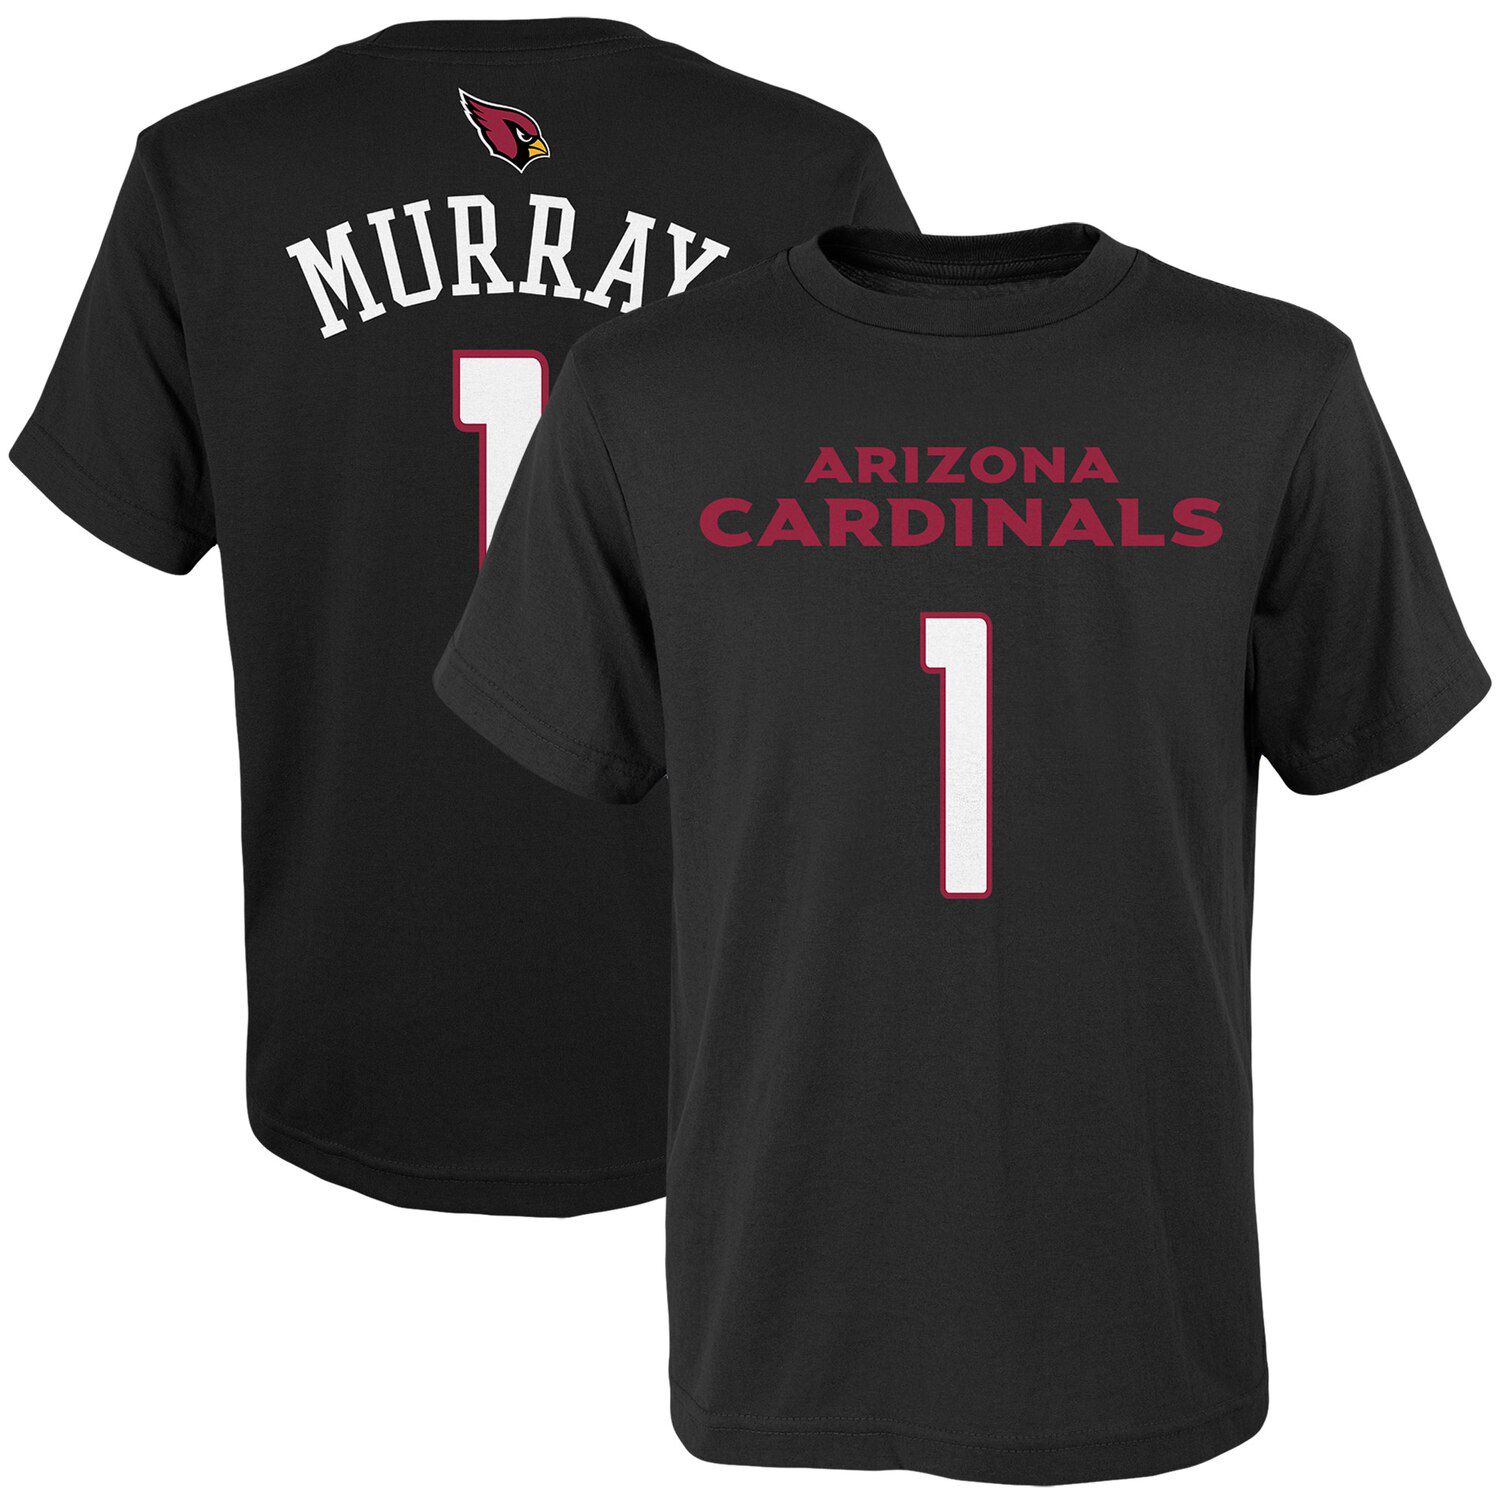 Arizona Cardinals kids T shirt